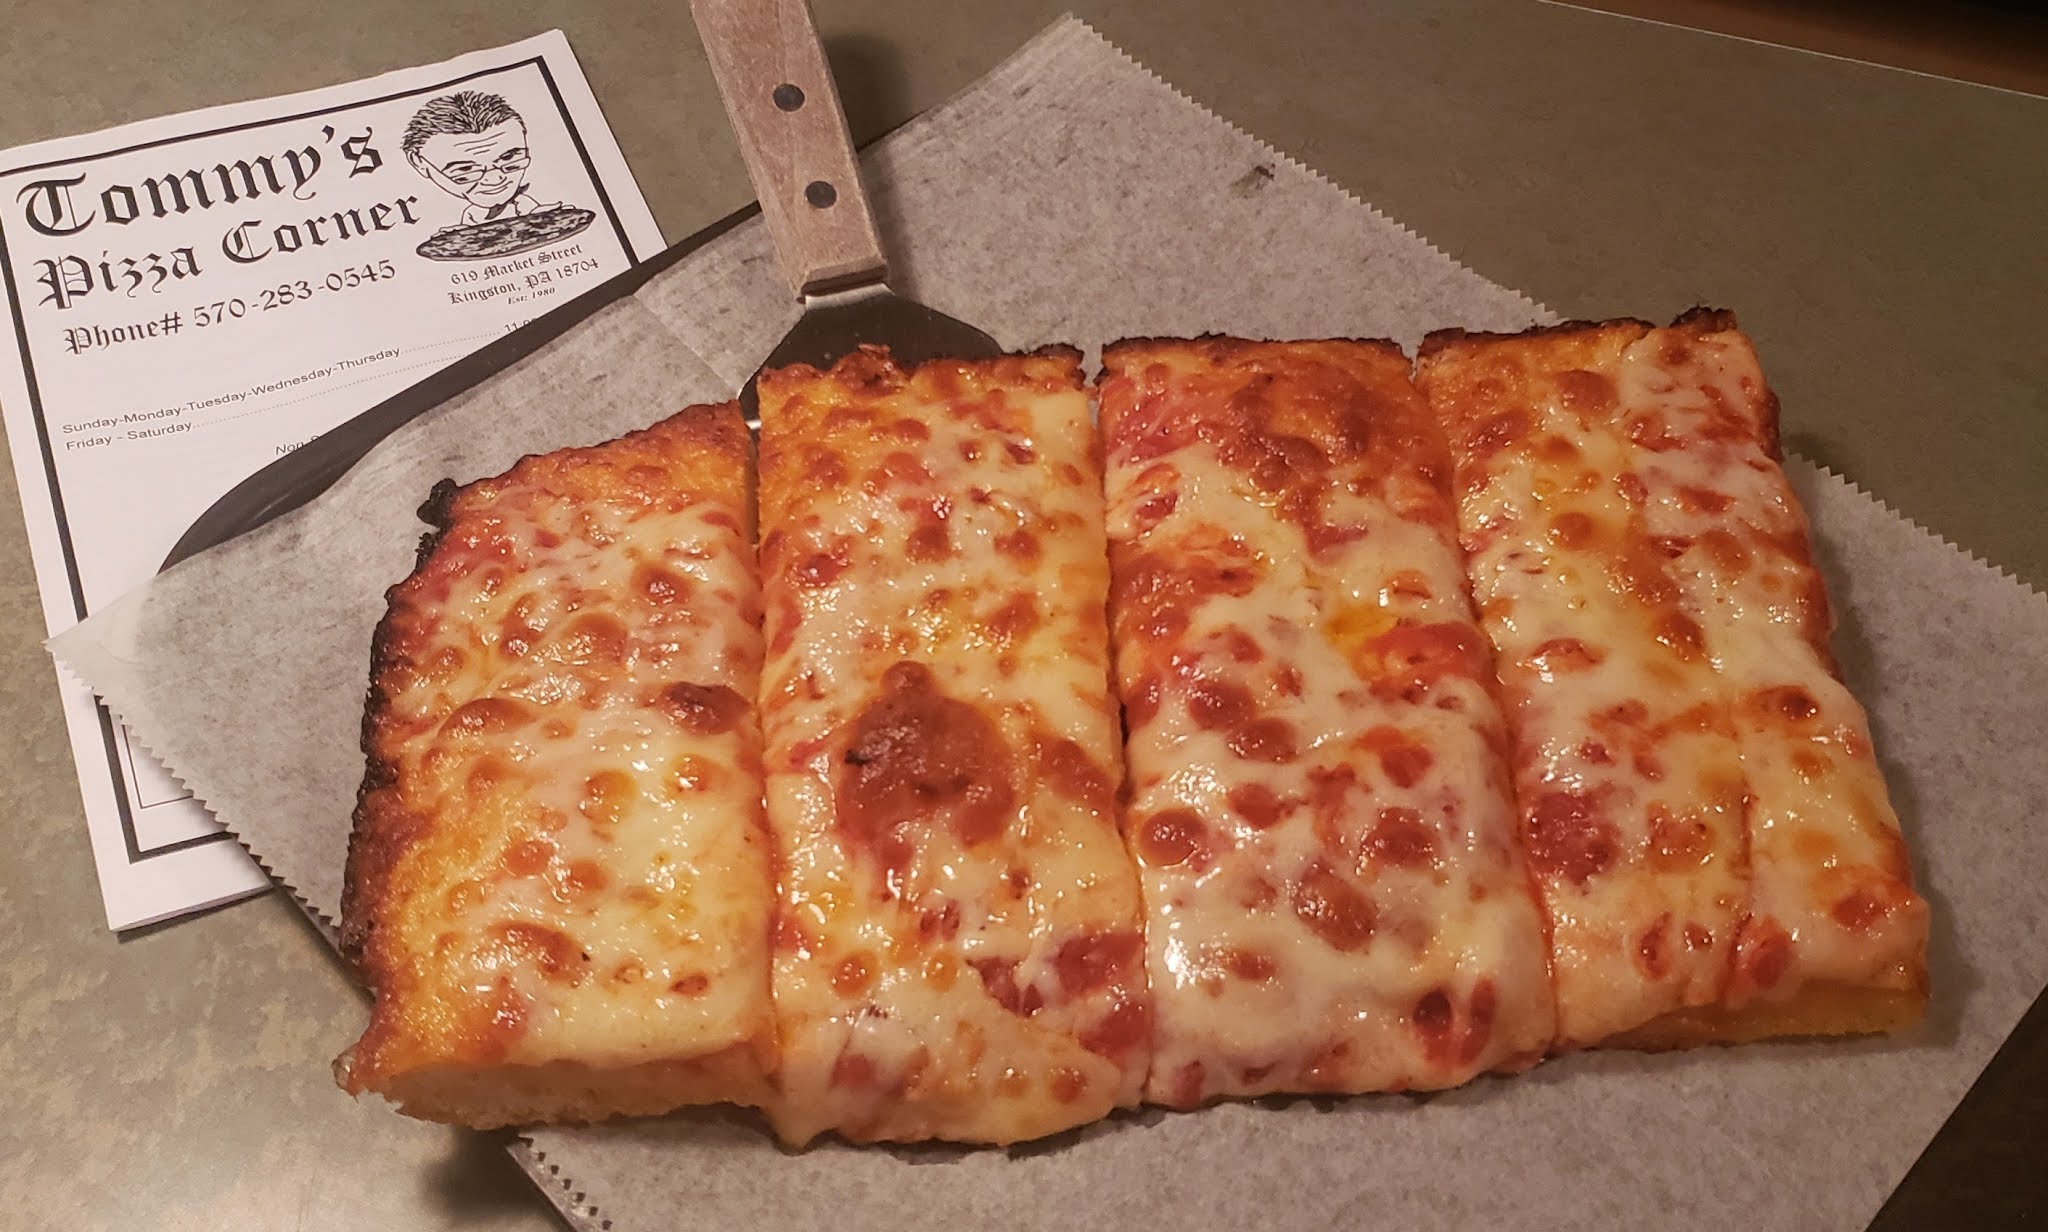 clarks corner pizza